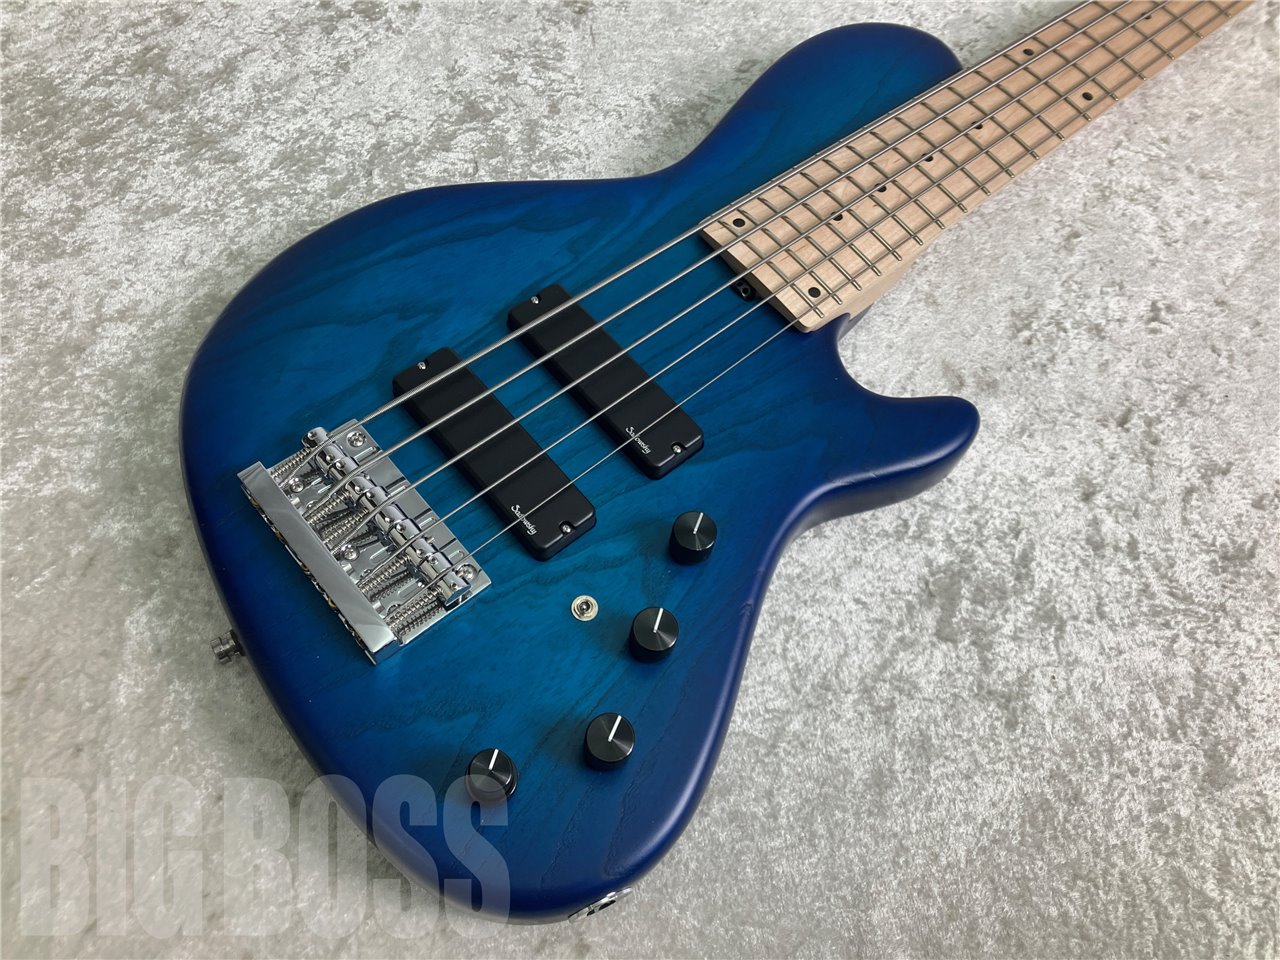 【即納可能】Sadowsky (サドウスキー) MetroLine ML 24-Fret Vintage Single Cut Bass Ash (Blue Transparent Satin) お茶の水駅前店(東京)